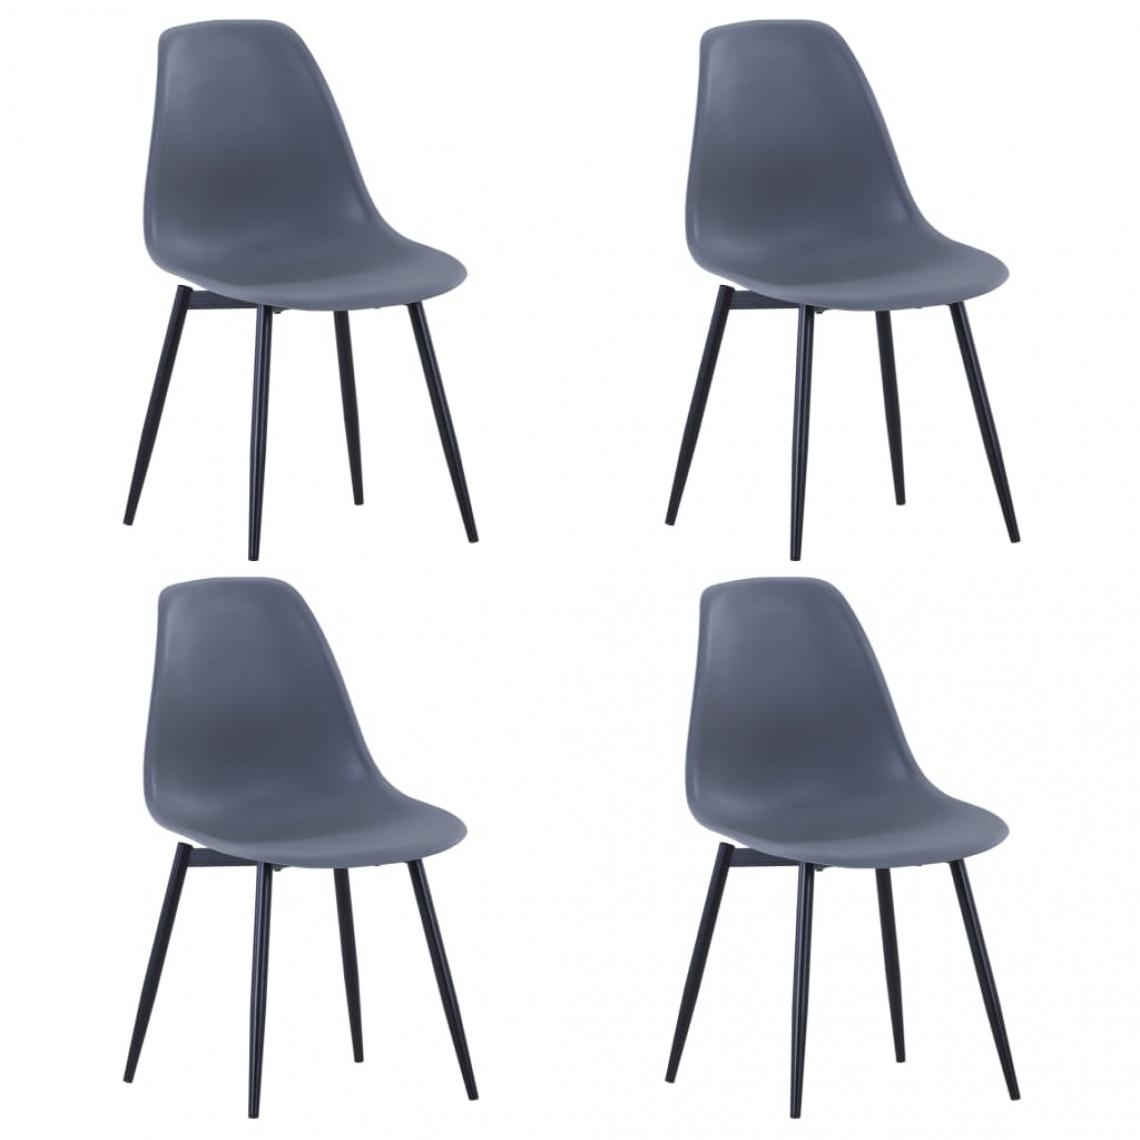 Decoshop26 - Lot de 4 chaises de salle à manger cuisine design classique PP gris CDS021579 - Chaises